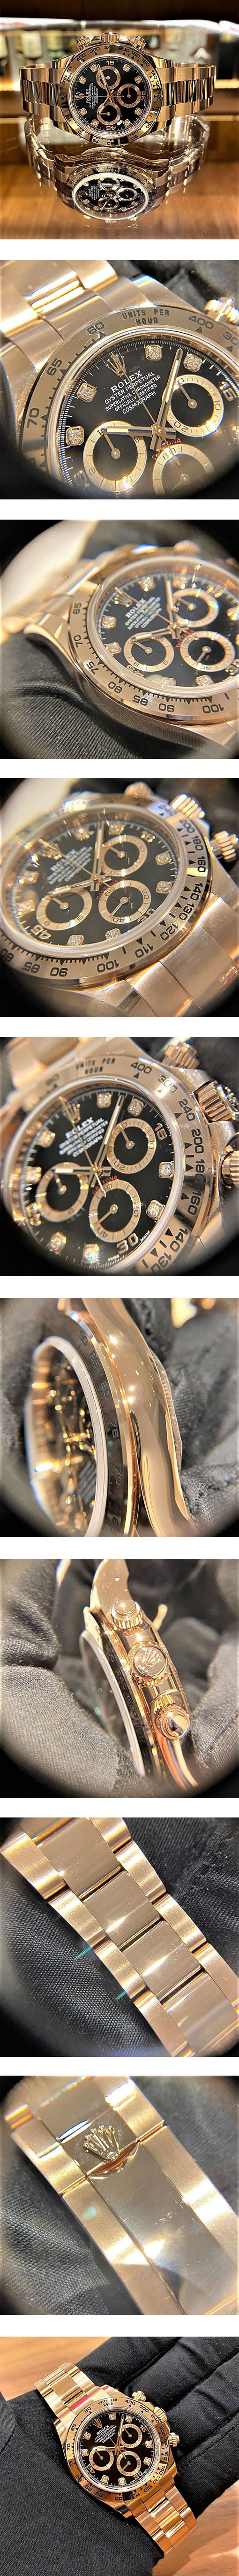 高級感のあるプレゼント レプリカ時計ROLEX コスモグラフ デイトナコピー 116505 エバーローズゴールド 7750搭載 自動巻き バケットダイヤ